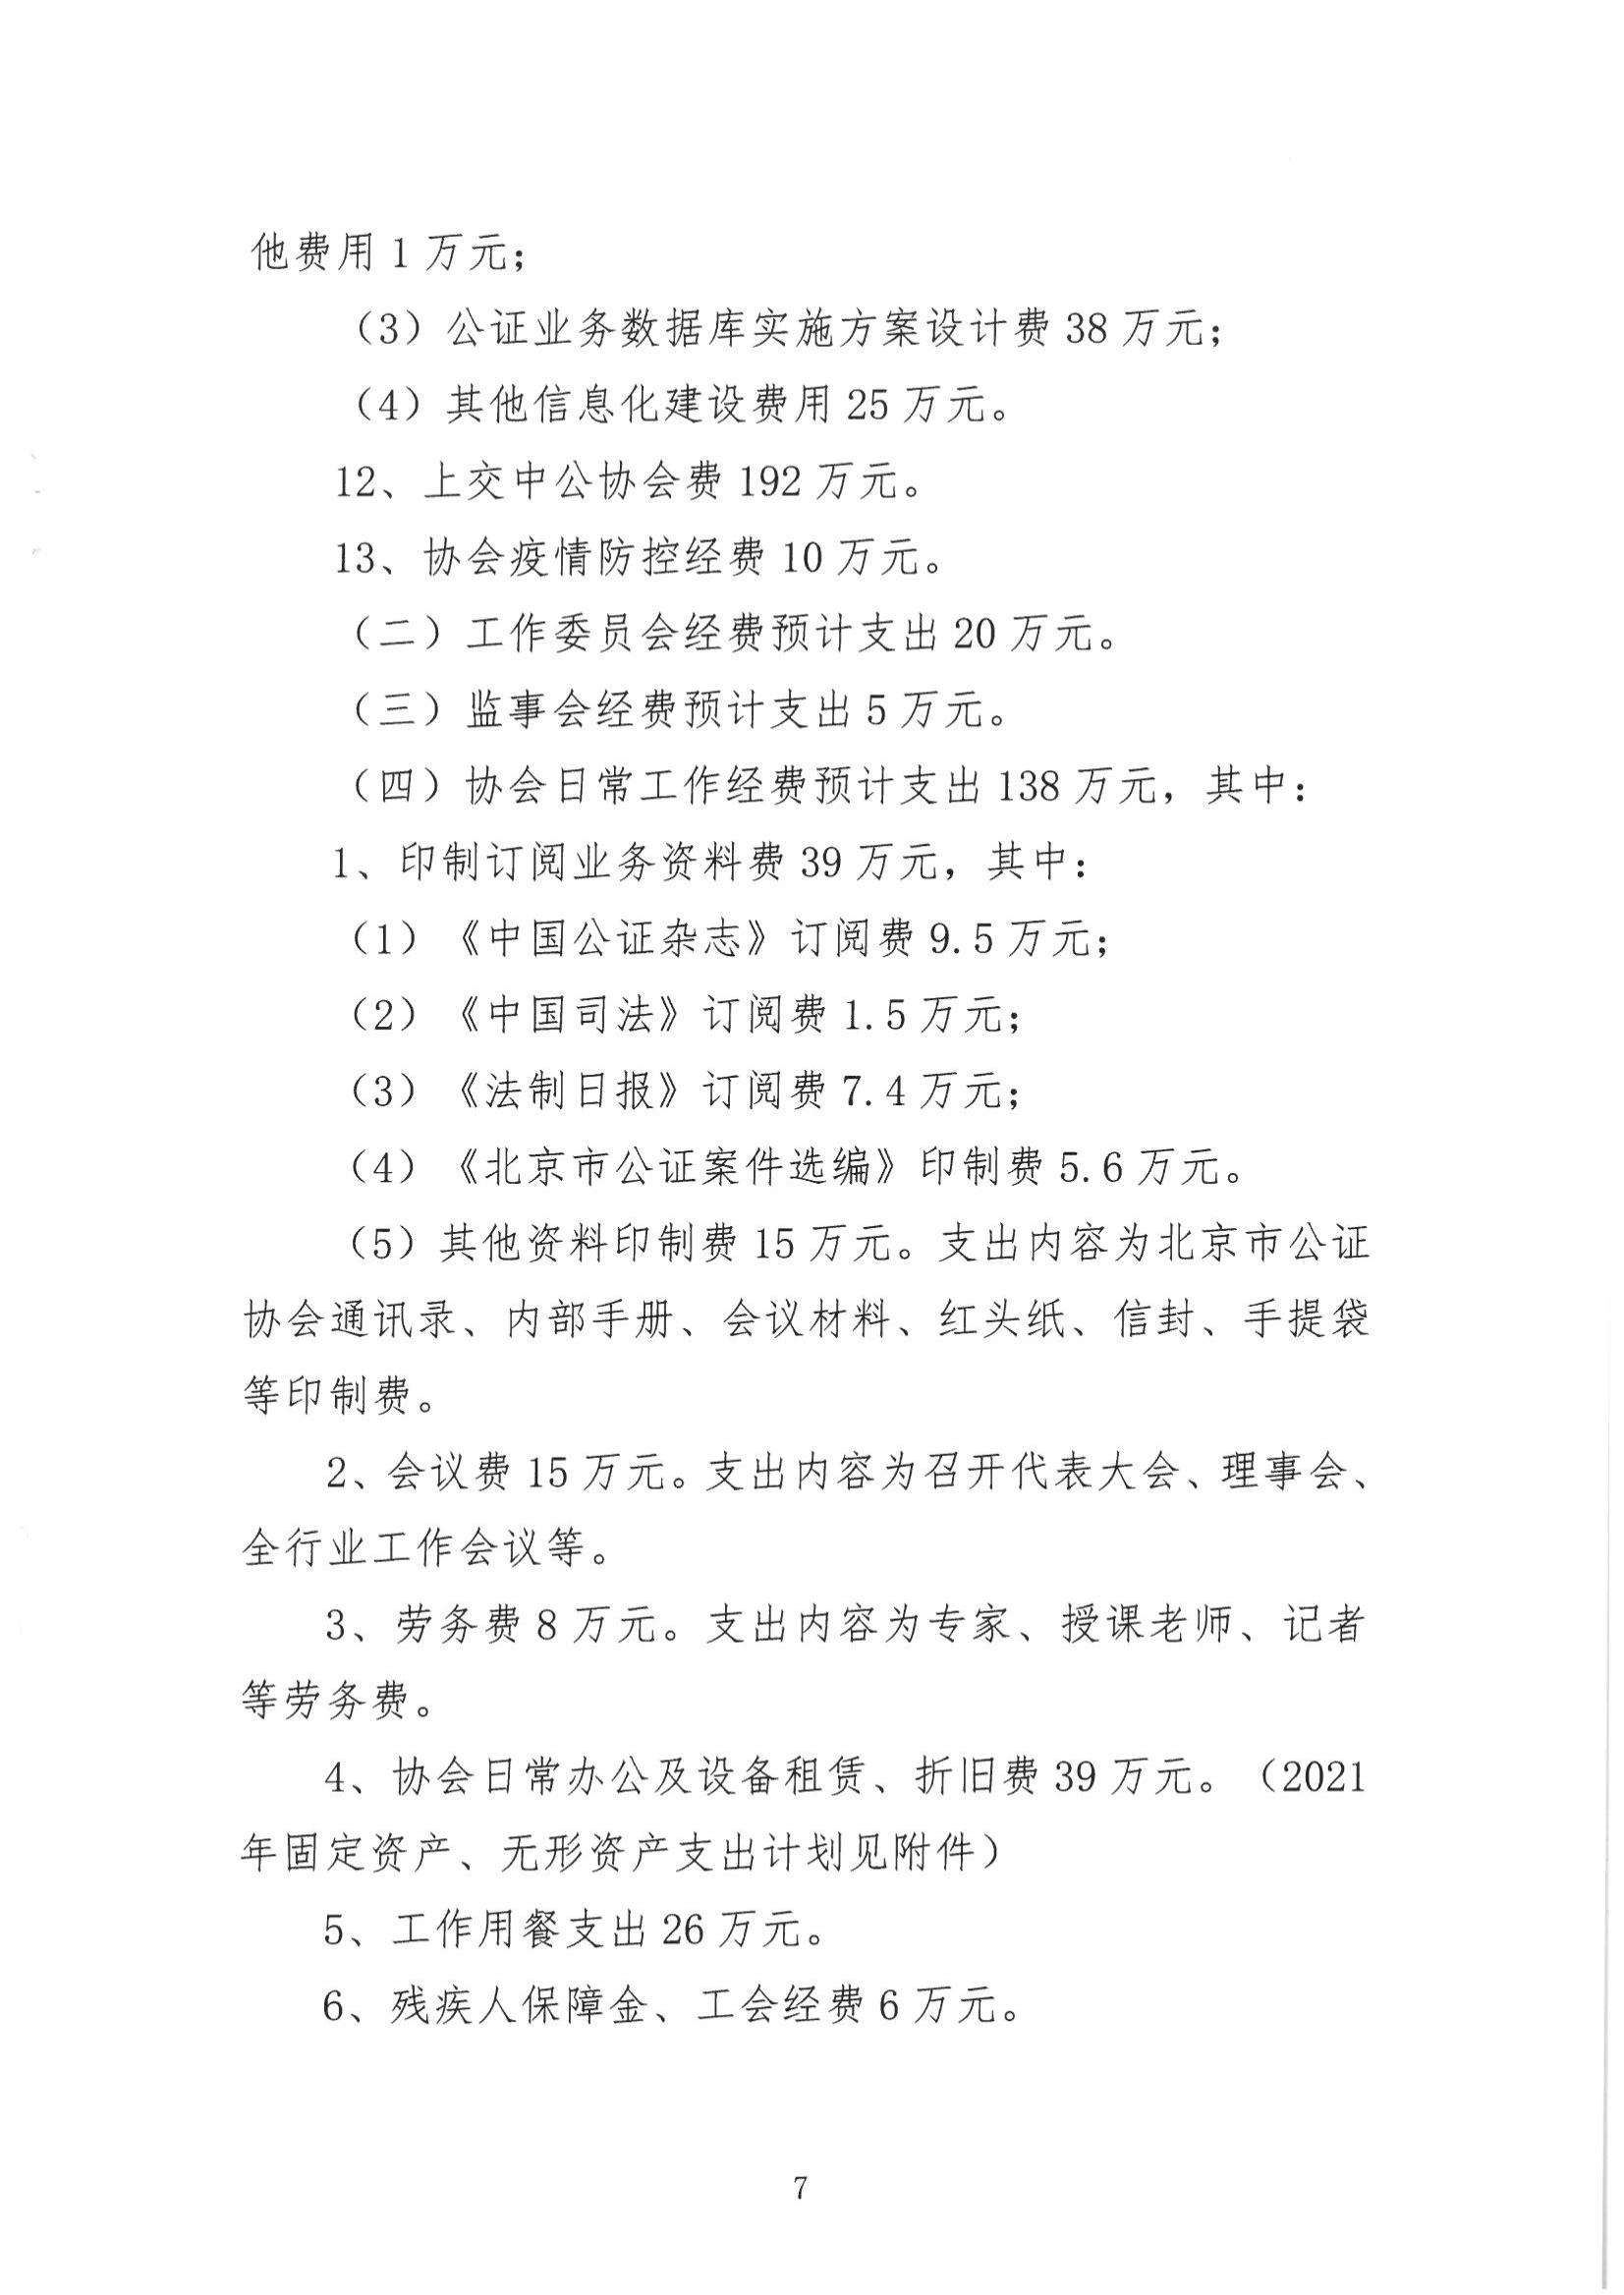 京公协字【2021】13号-北京市公证协会2020年经费收支情况和2021年经费预算情况的报告（发文稿纸）(1)_07